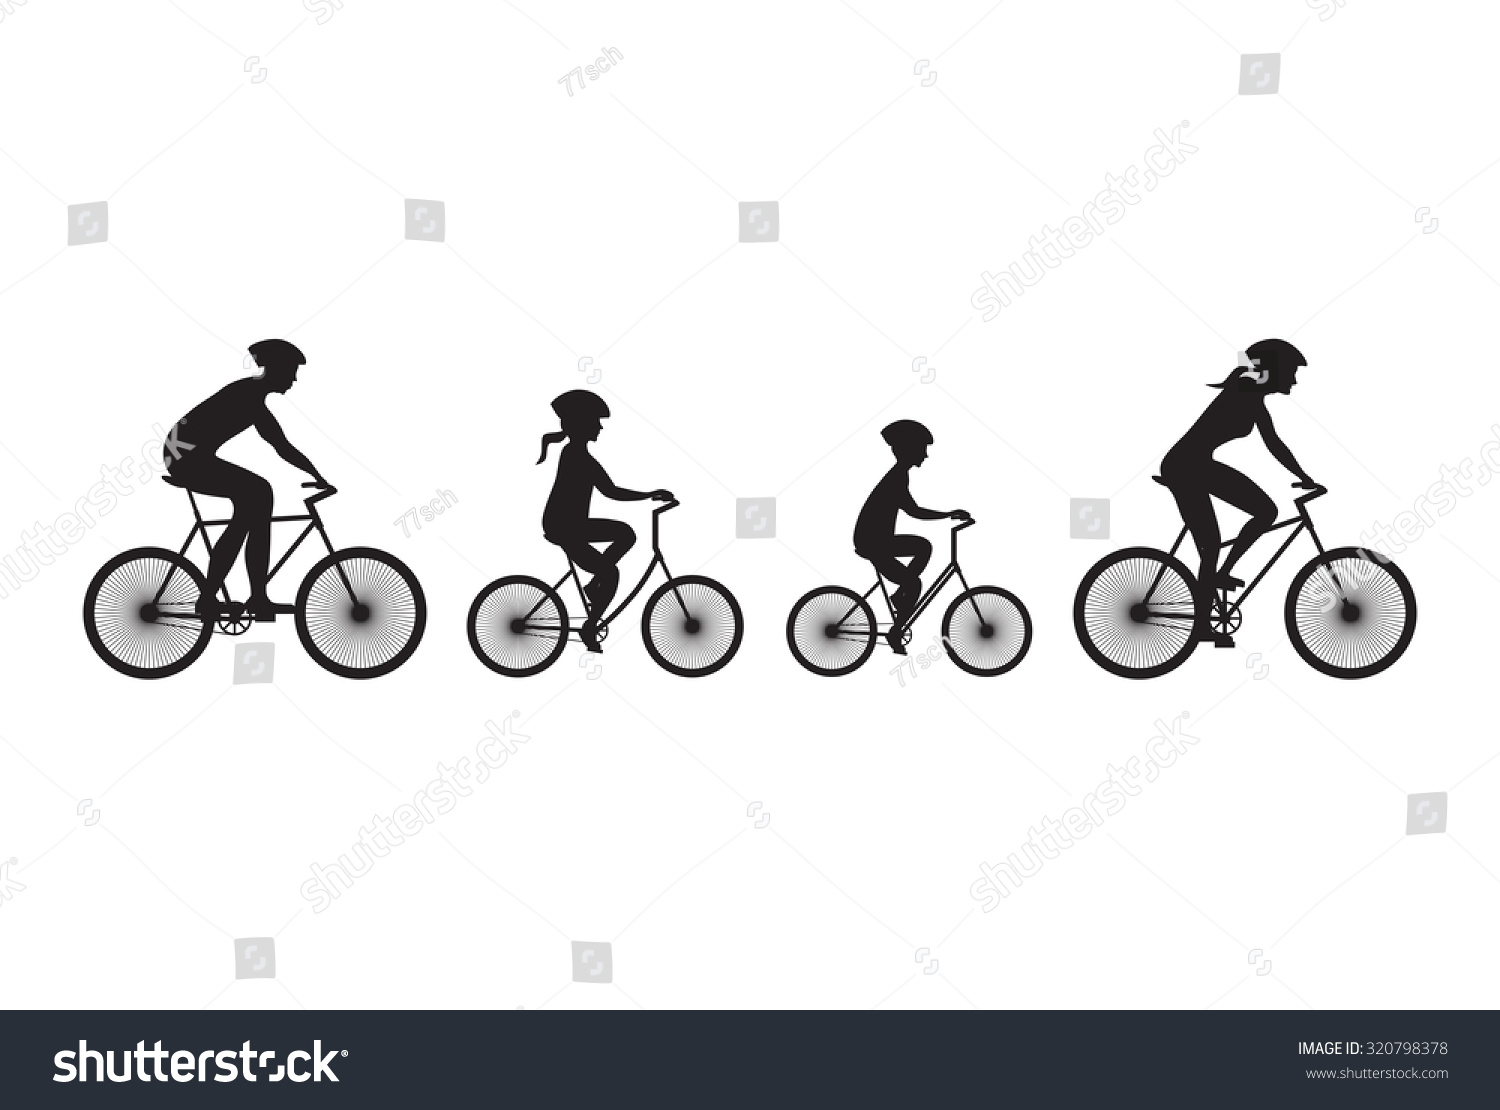 family biking clipart - photo #10